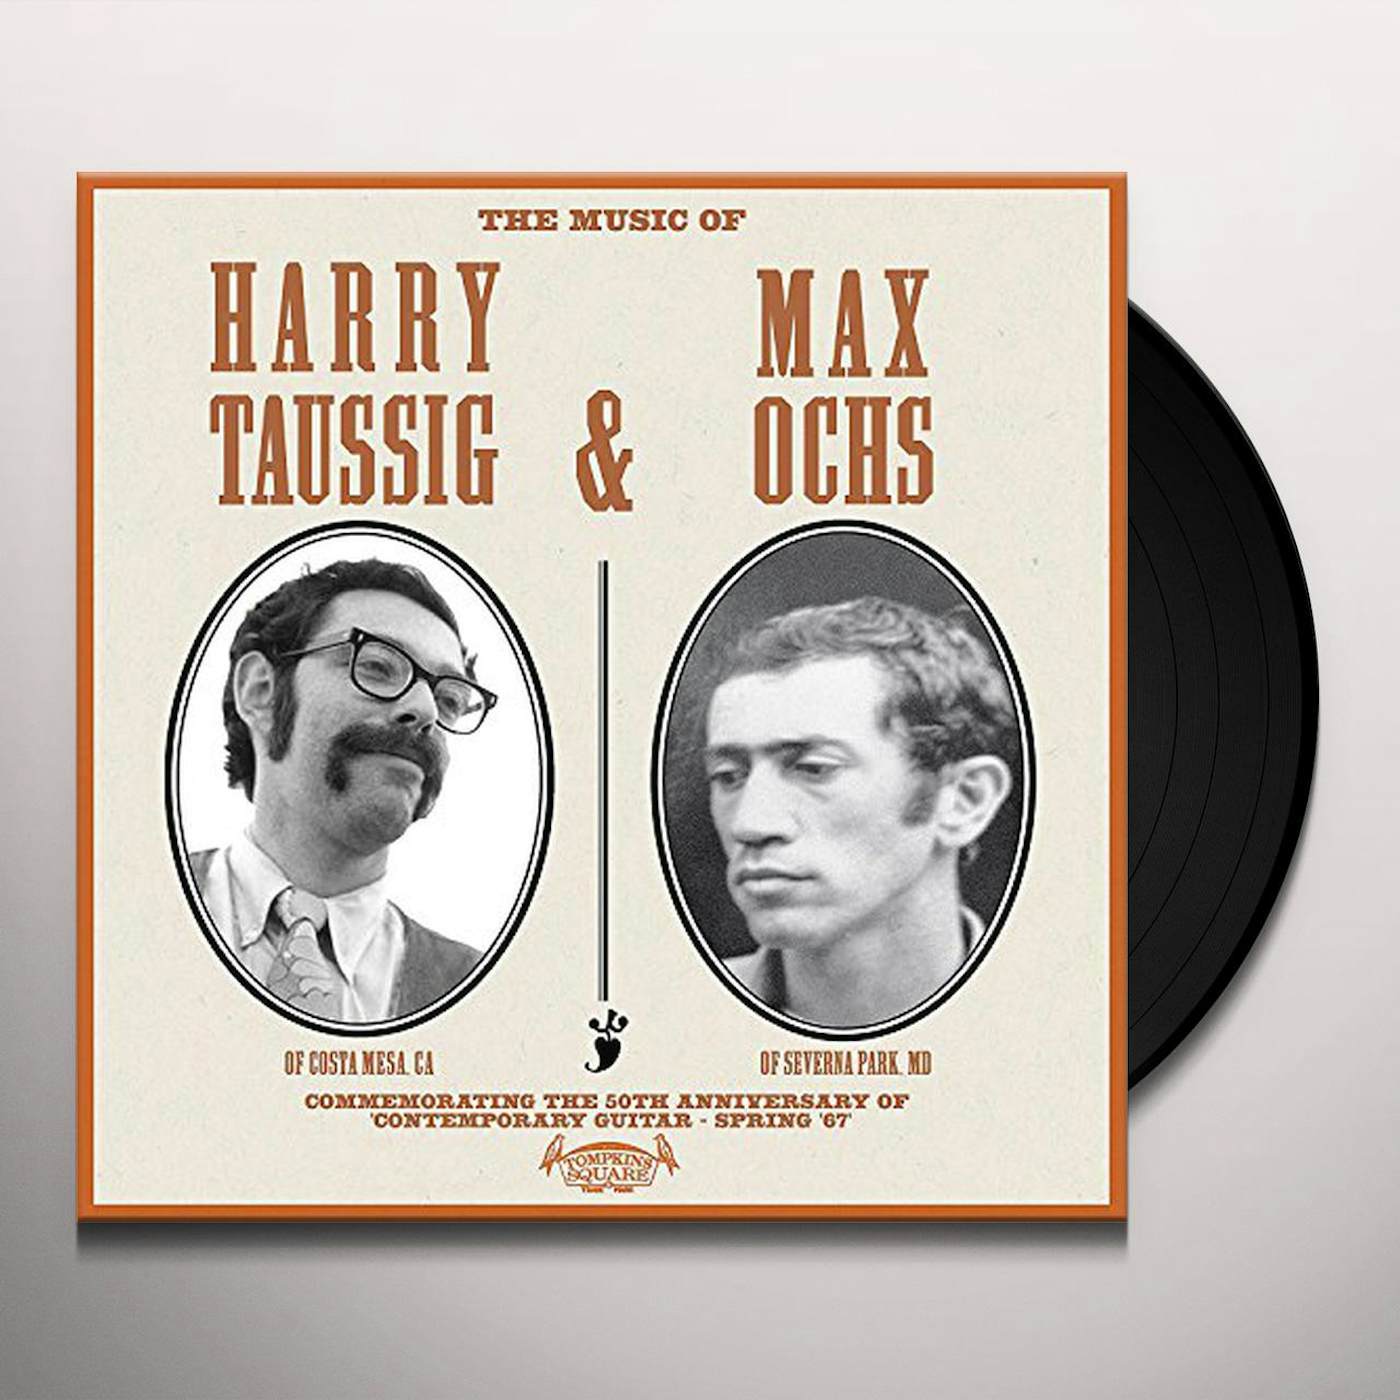 MUSIC OF HARRY TAUSSIG & MAX OCHS Vinyl Record